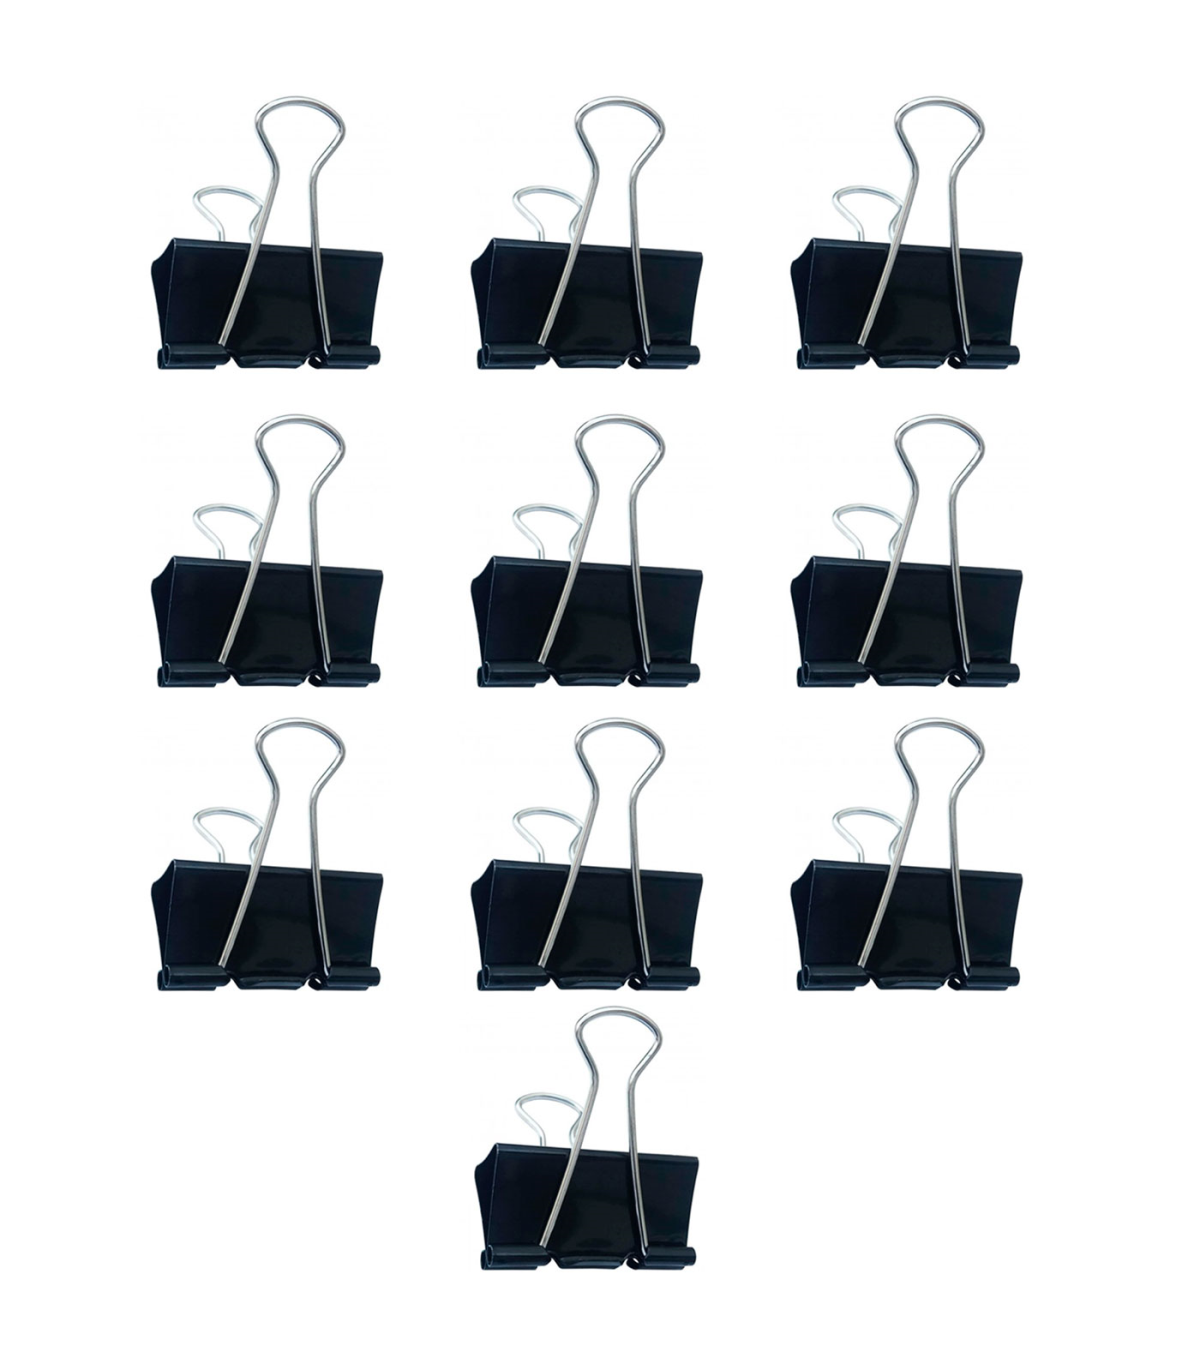 Tradineur - Pack de pinzas para ropas - 24 Unidades - Fabricadas en madera  - Utensilios de limpieza y organización - Longitud de